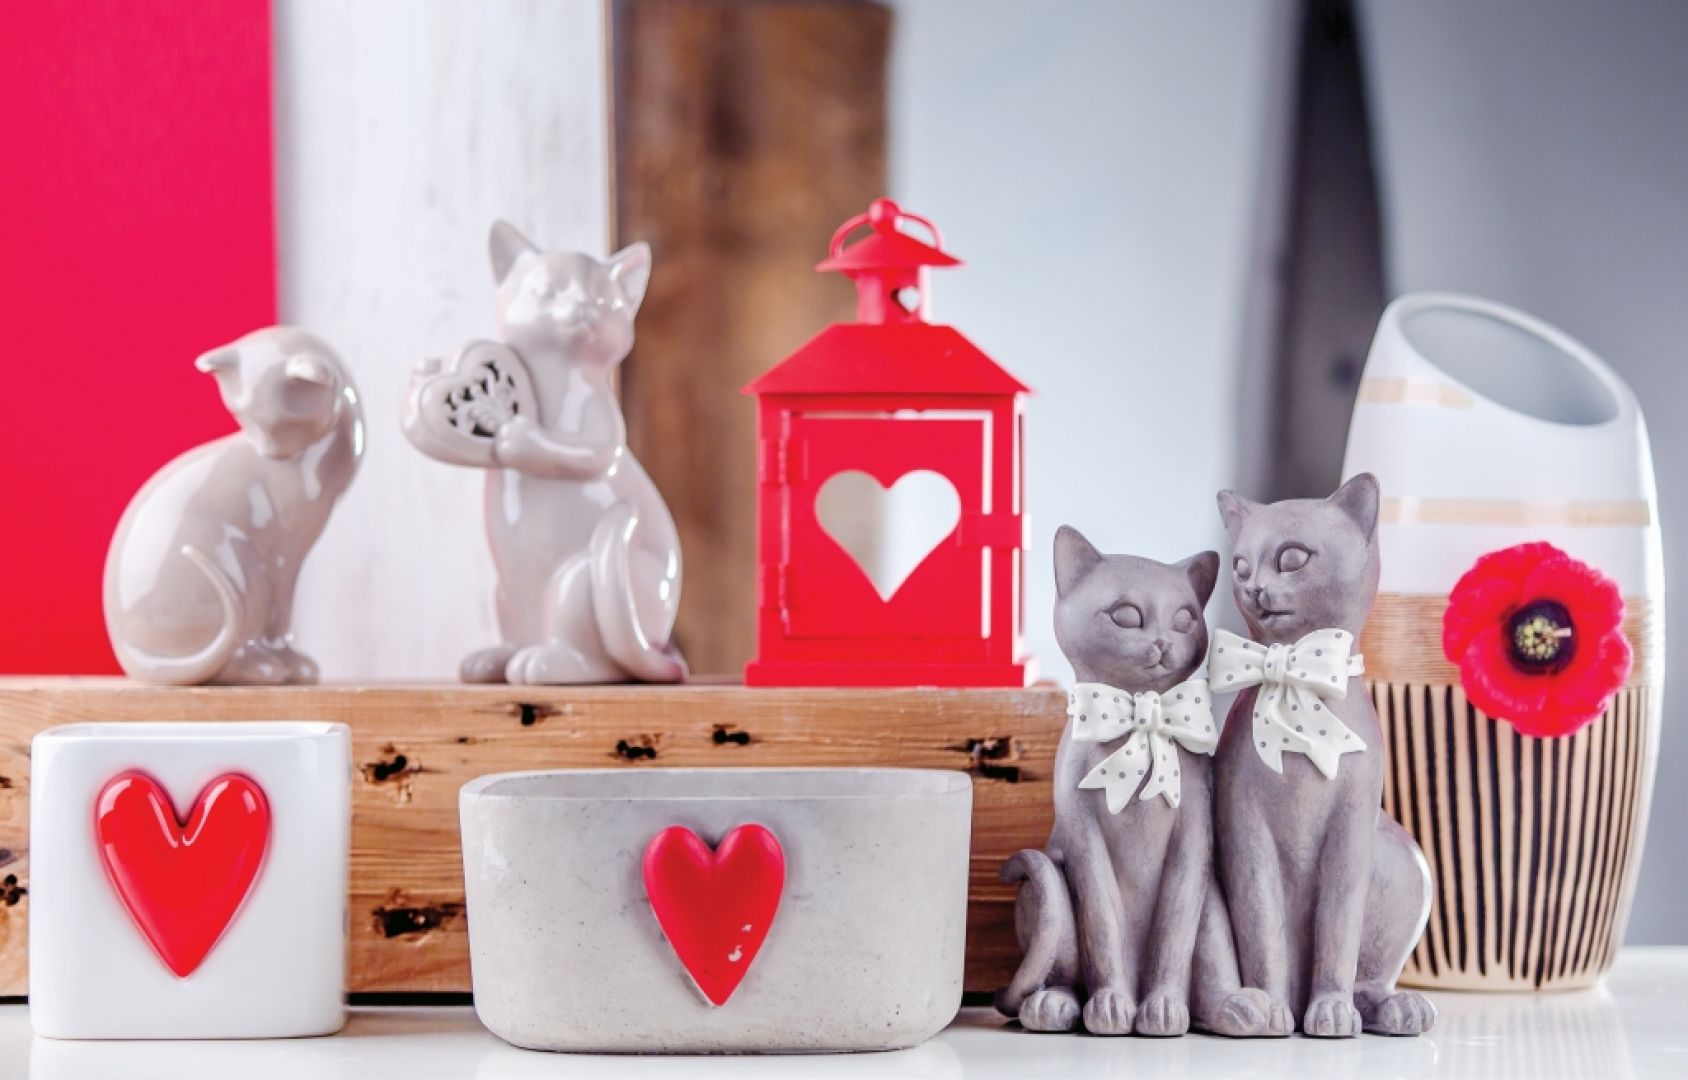 Kolekcja walentynkowa marki Home&You to urocze latarenki, ale też motywy zakochanych zwierząt. Fot. Home&you